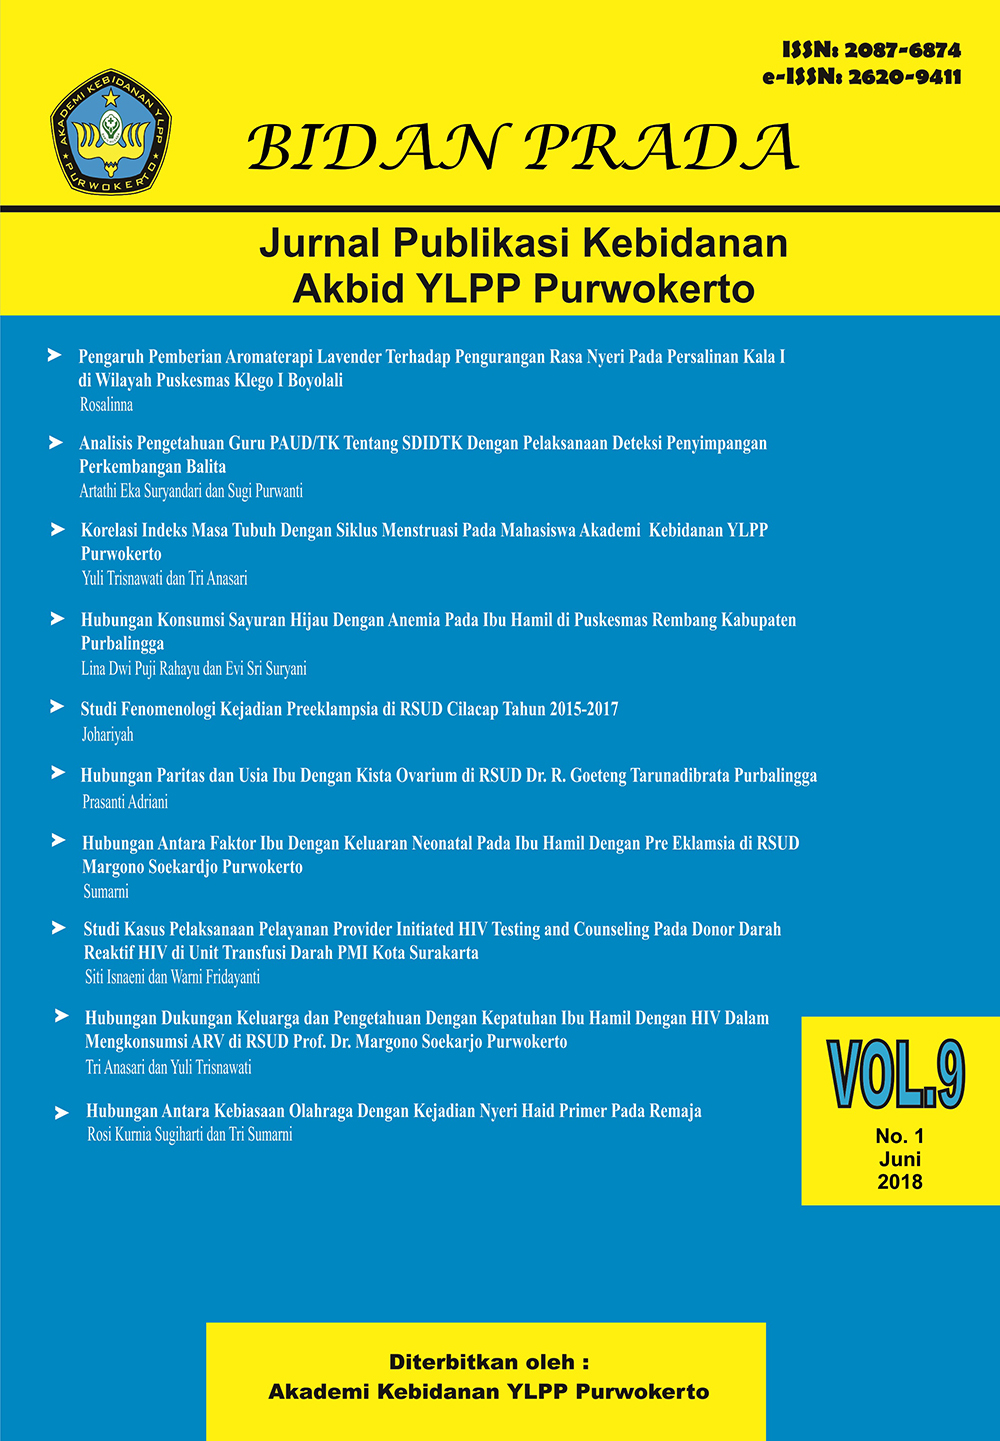 					View Vol. 9 No. 1 (2018): Jurnal Bidan Prada Edisi Juni 2018
				